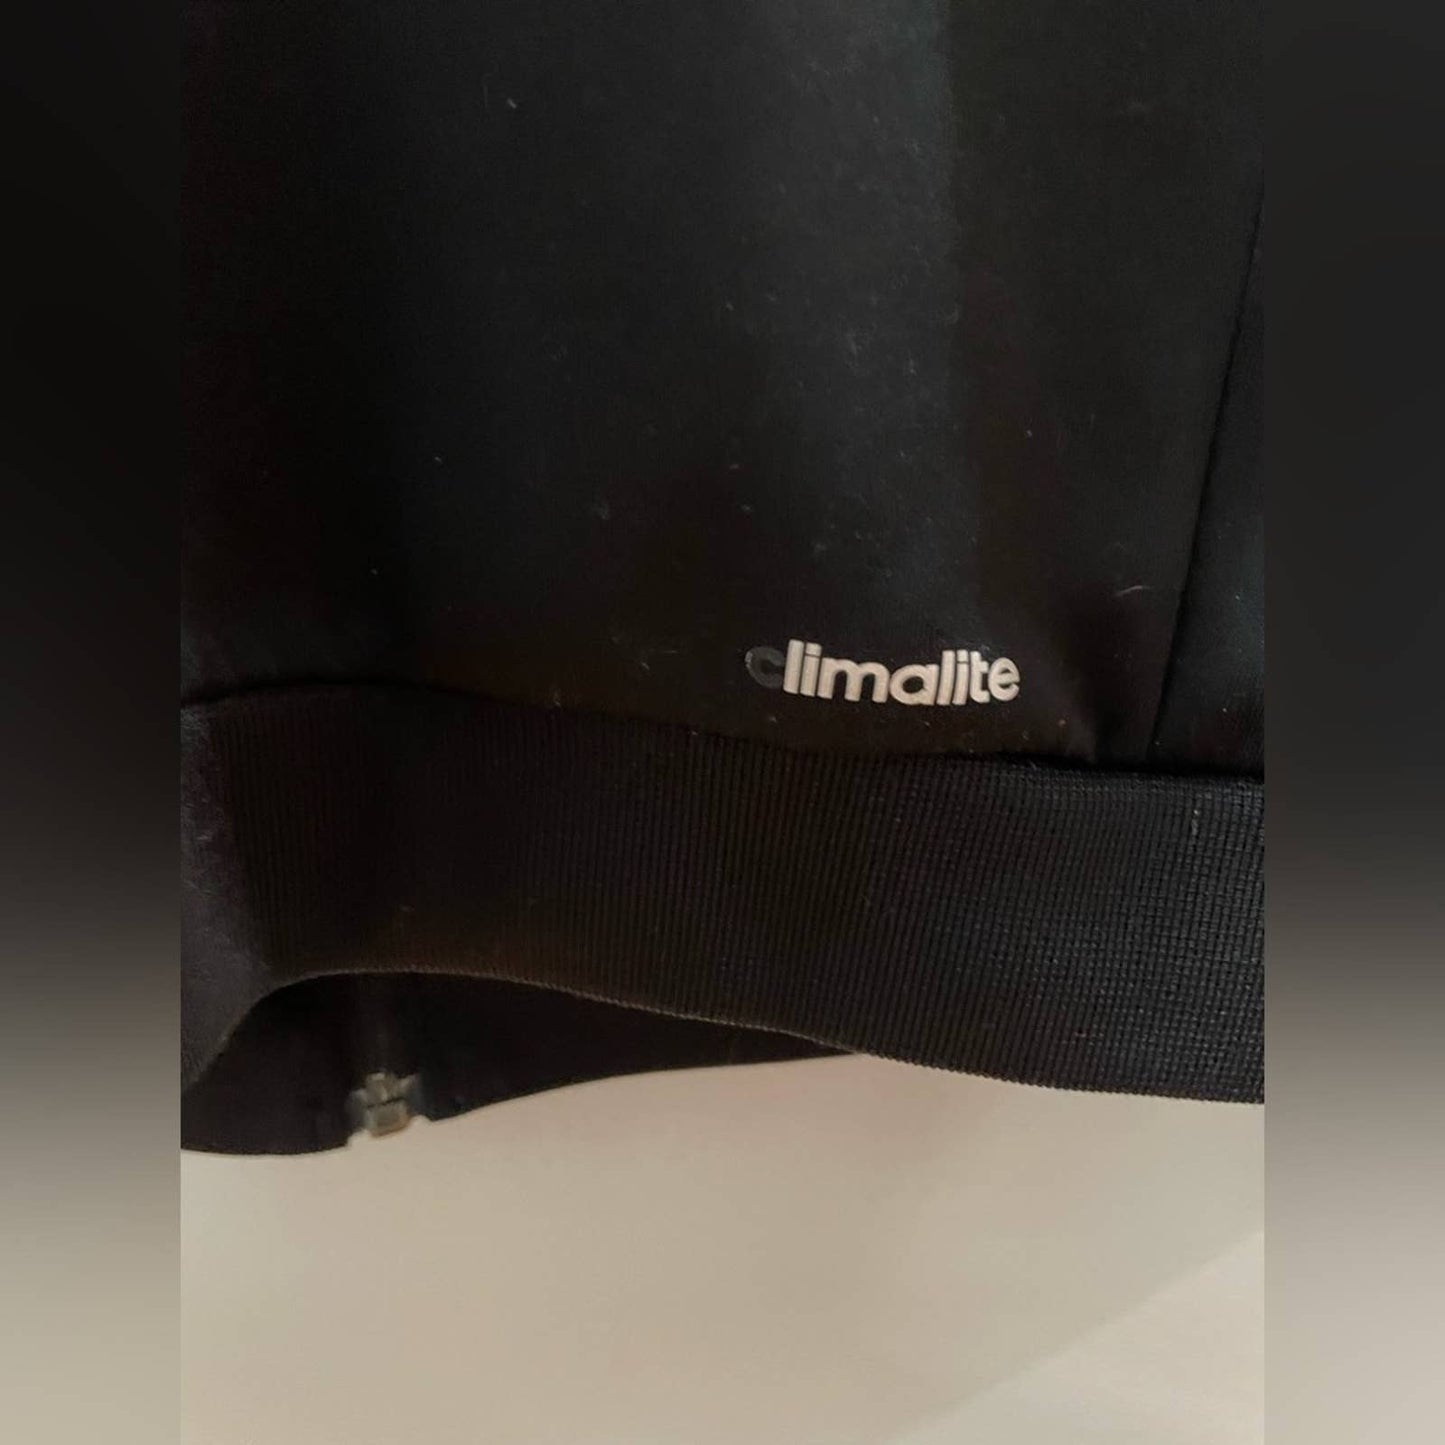 MD Black/White Adidas Long Sleeve Climalite Zip-Up Jacket